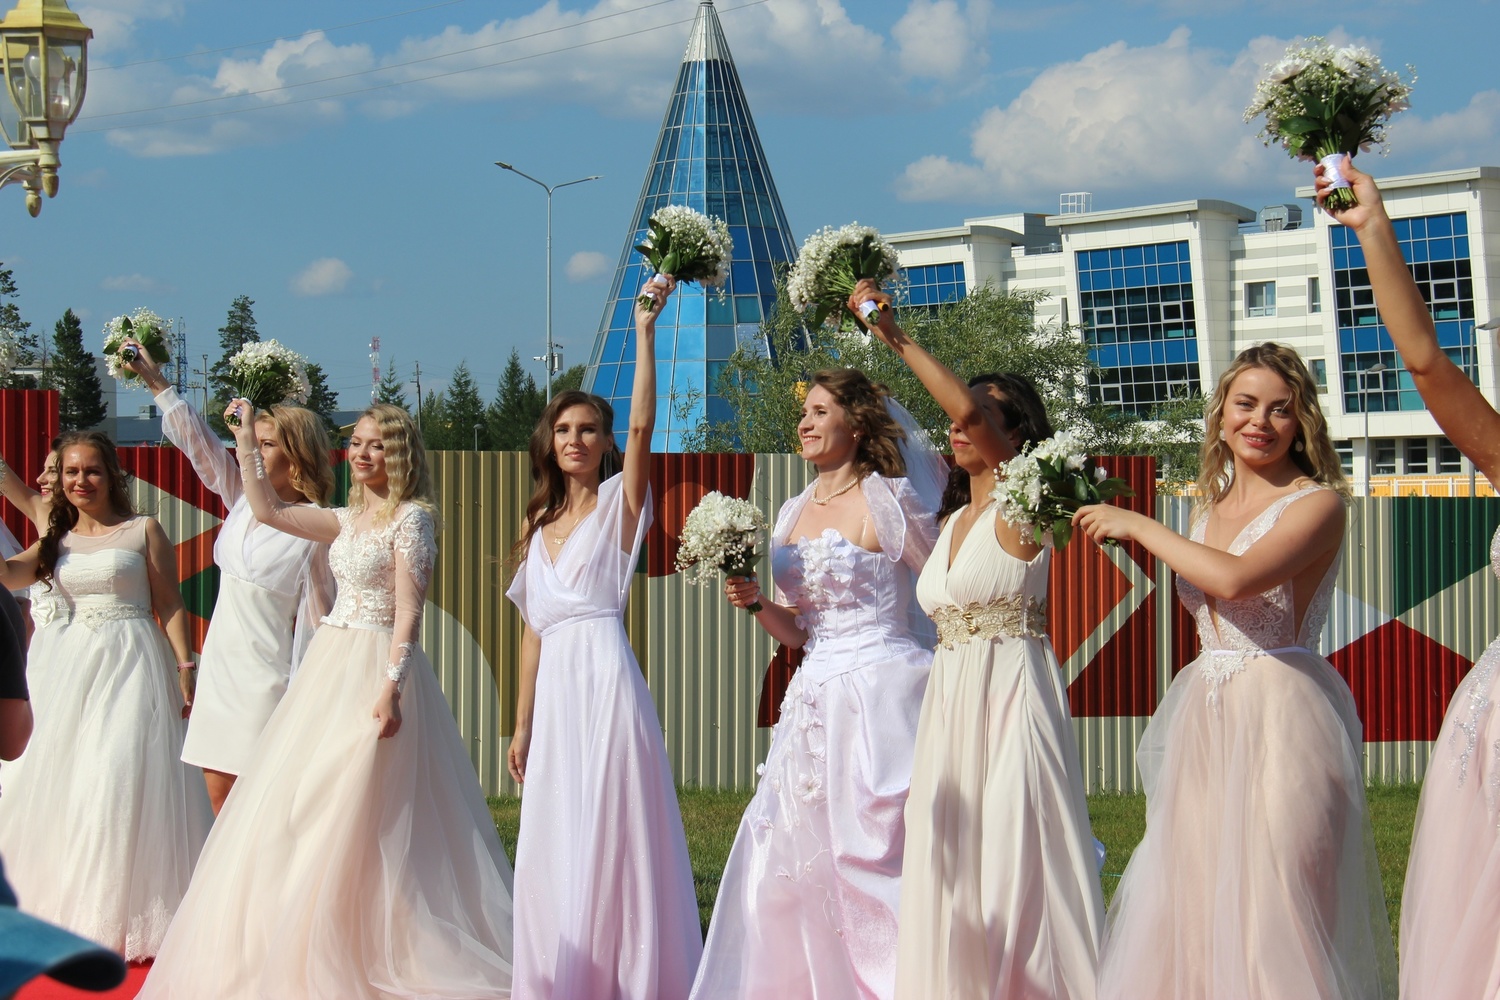 Дефиле под восторженные взгляды: в Губкинском провели яркий парад невест